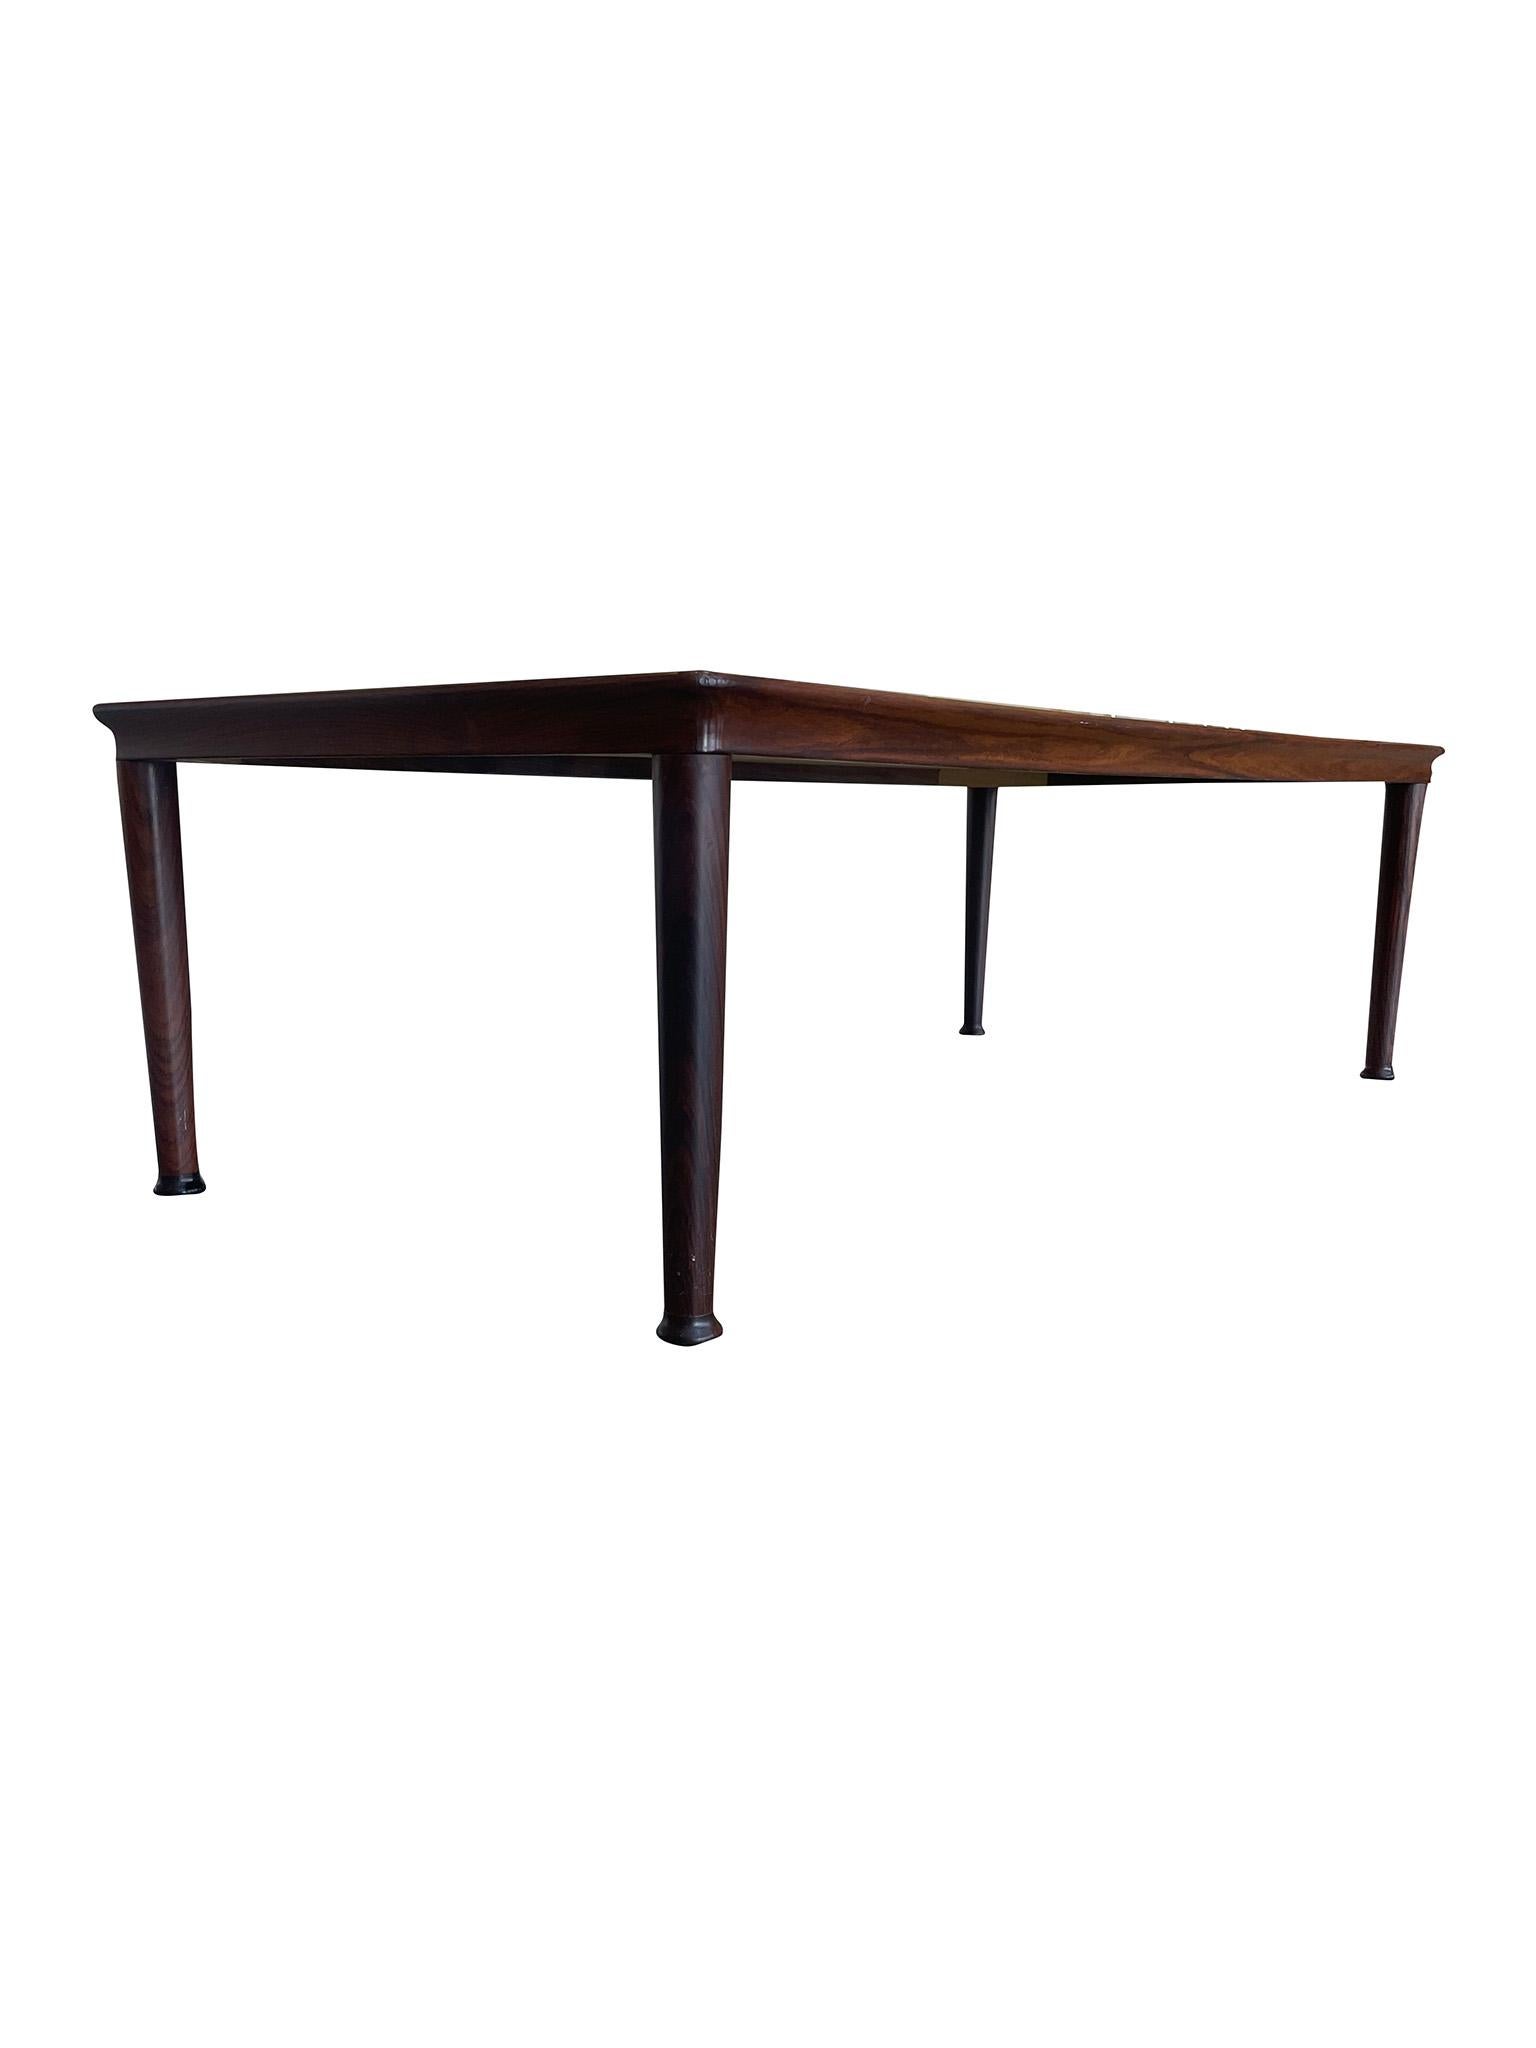 Table basse moderne danoise du milieu du siècle fabriquée par Vejle Møbelfabrik Stole. Fabriquée en bois de rose, cette table basse est un bel exemple de l'artisanat danois et de ses idéaux en matière de design. Caractérisée par son profil minimal,